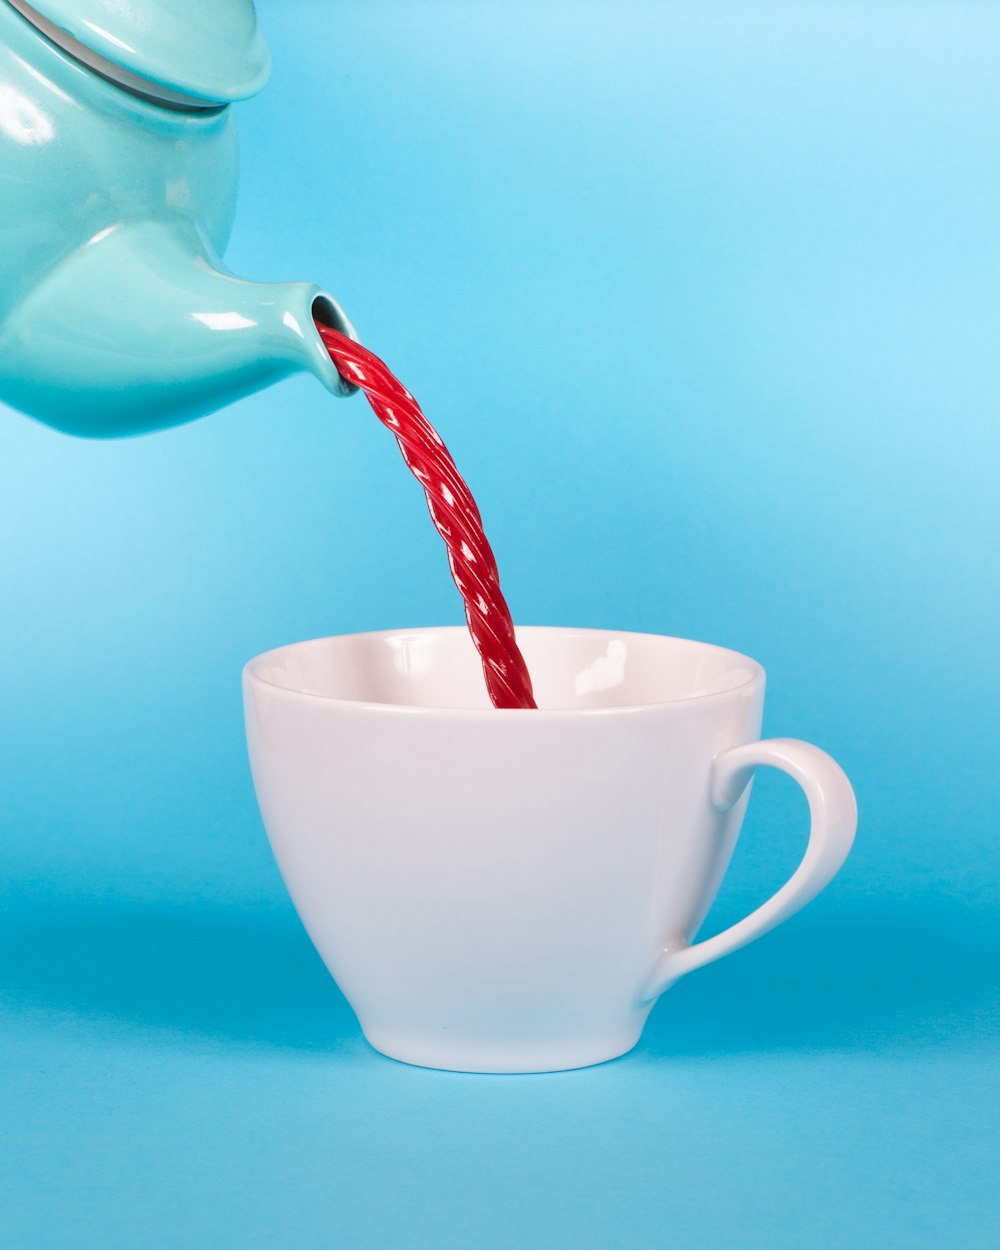 Grüne Teekanne, die rote Flüssigkeit auf weiße Teetasse gießt, Nahaufnahme Fotografie